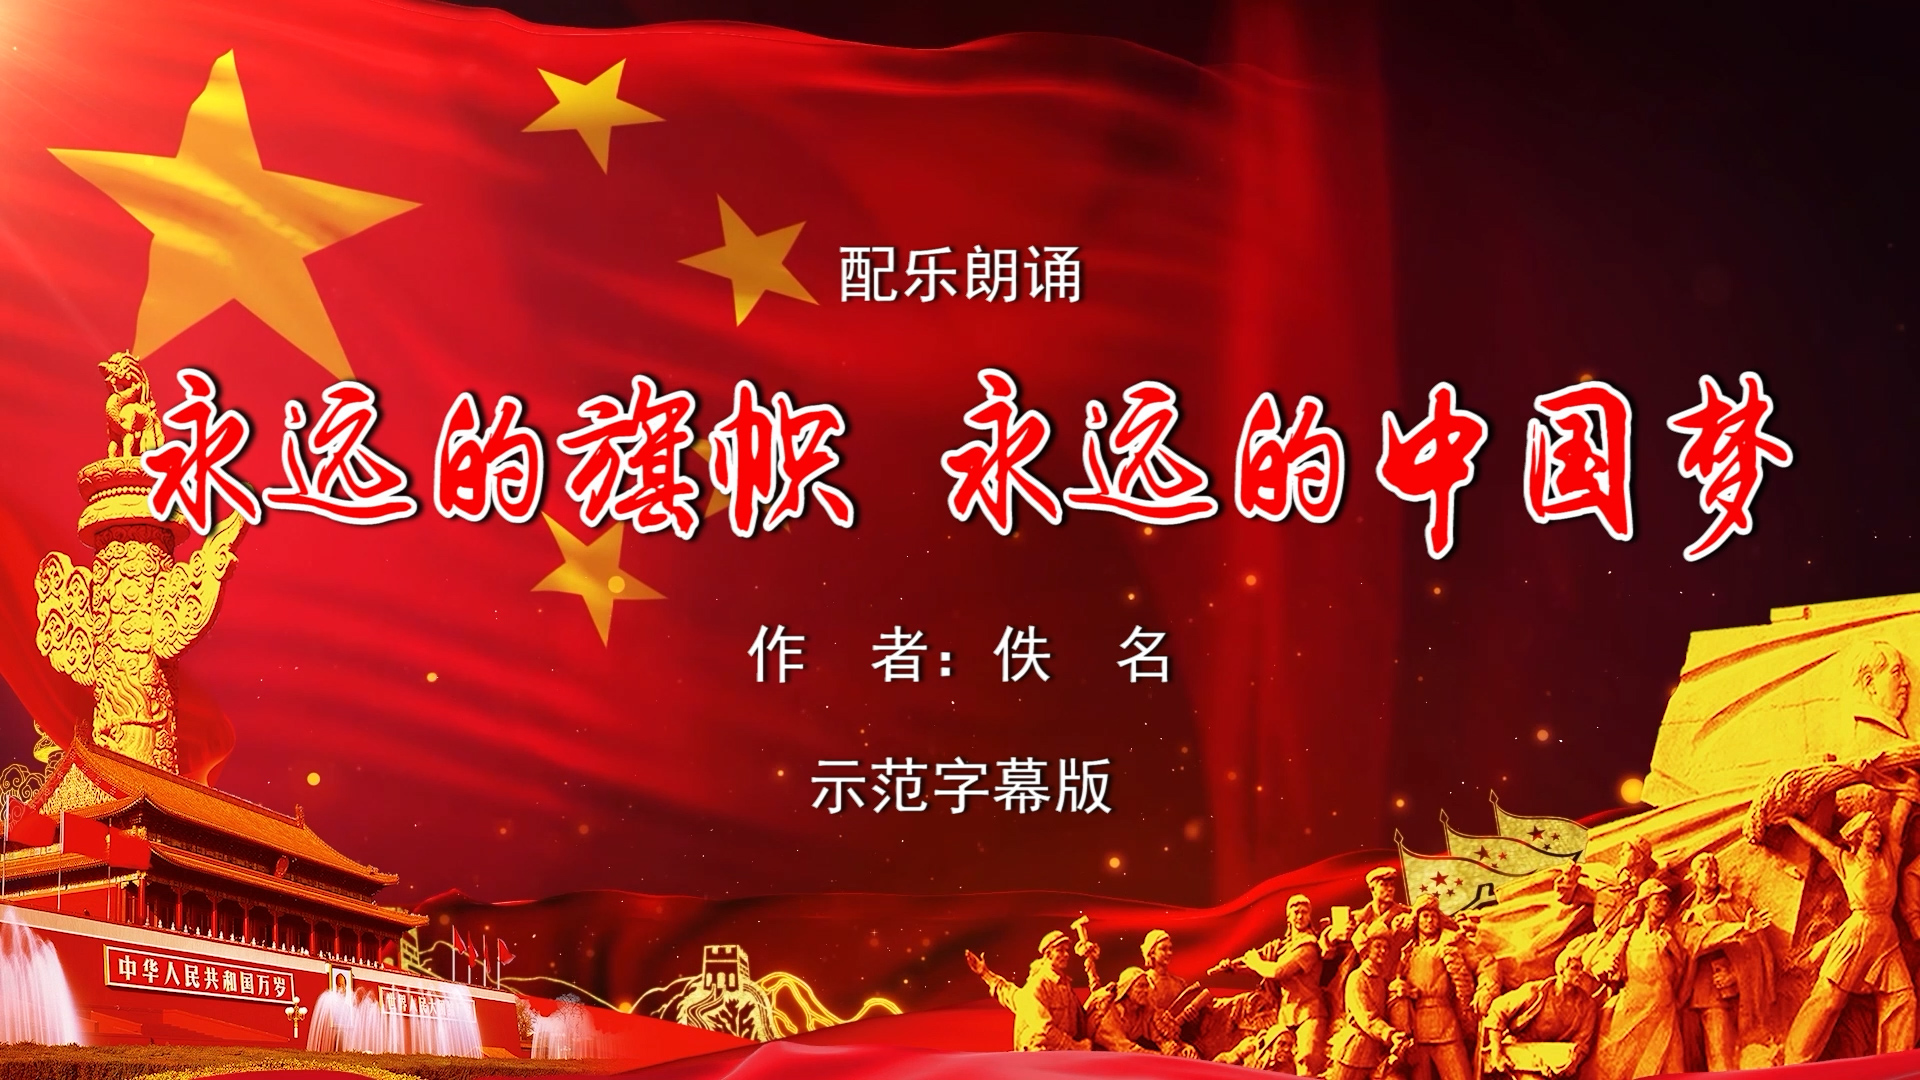 永远的旗帜 永远的中国梦 双人诗歌朗诵配乐伴奏舞台演出LED背景视频素材TV